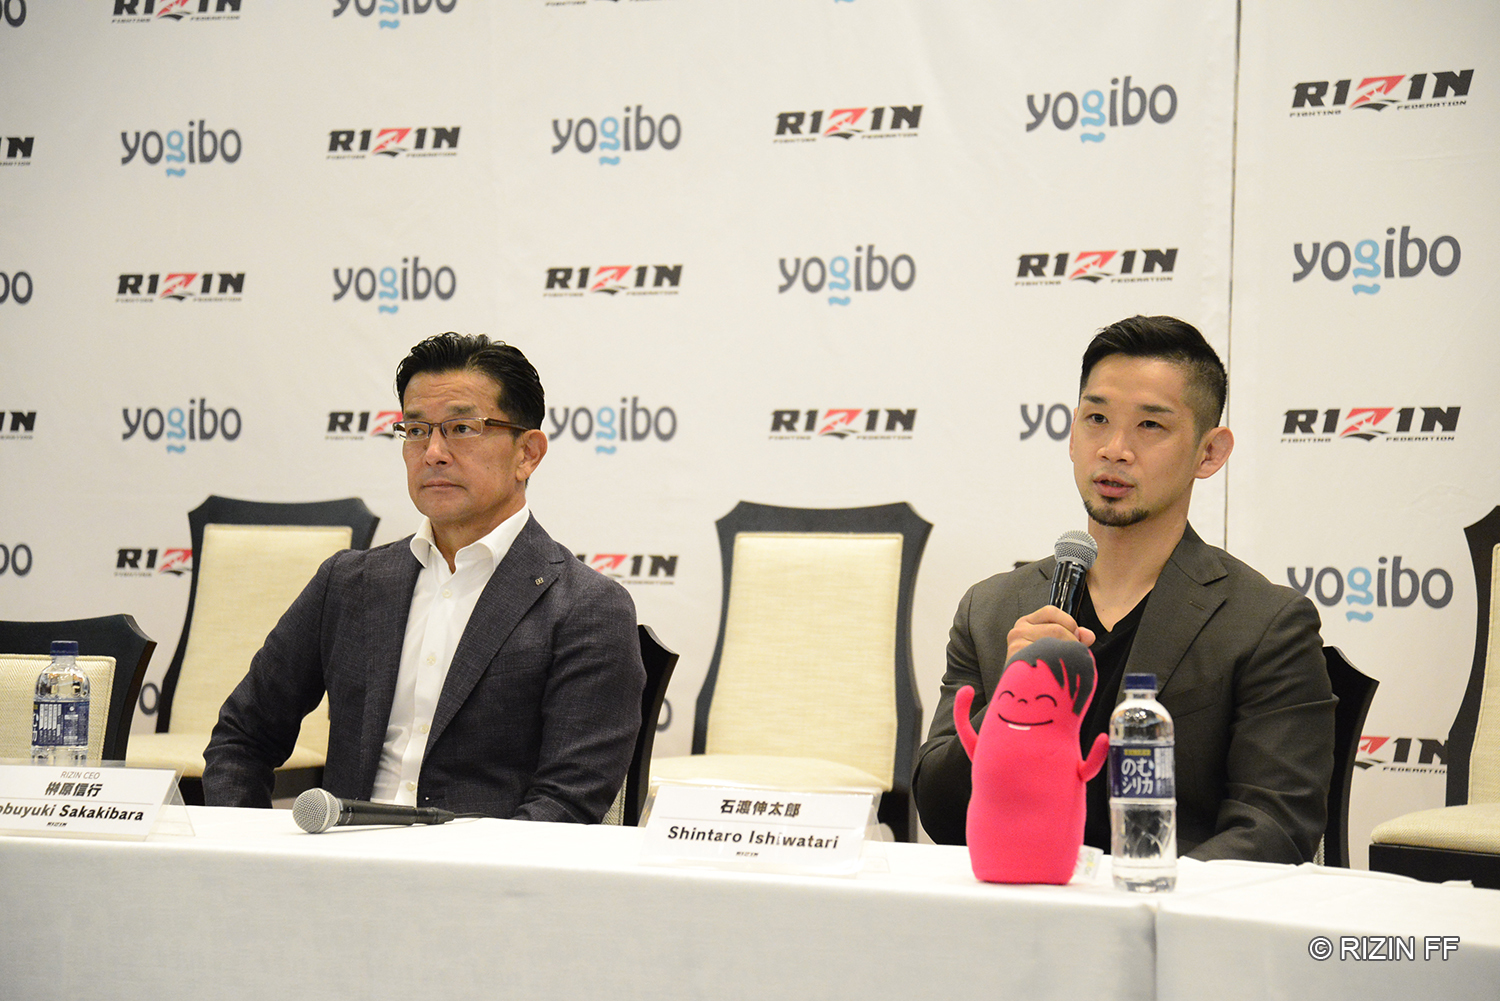 引退を発表する榊原信行CEO（右）と石渡伸太郎（左）  (C)RIZIN FF